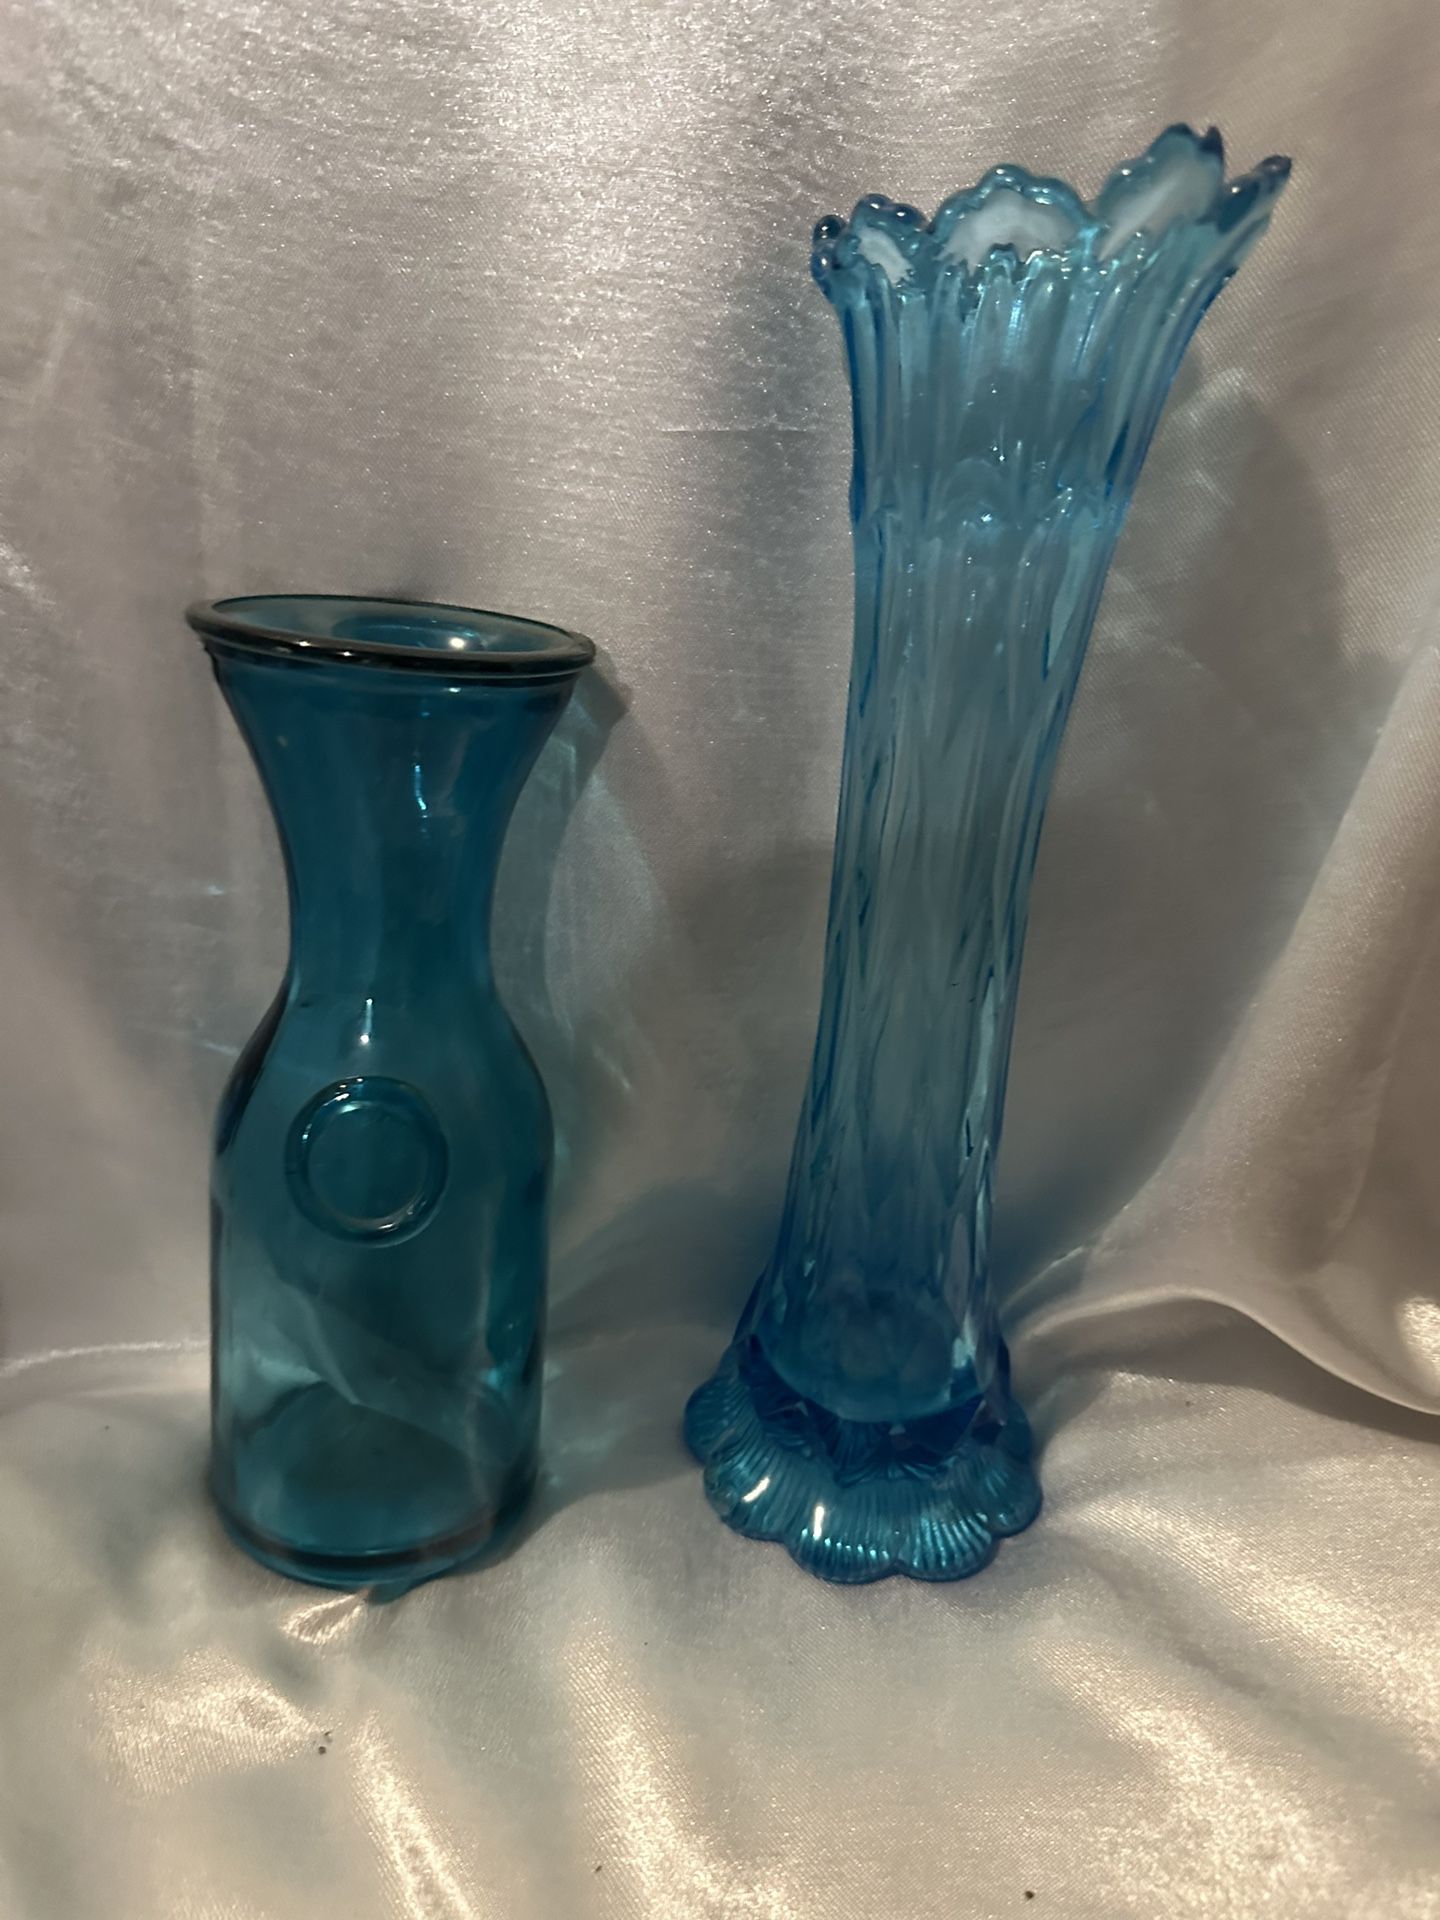 2 Turquoise Blue Vases,Antique